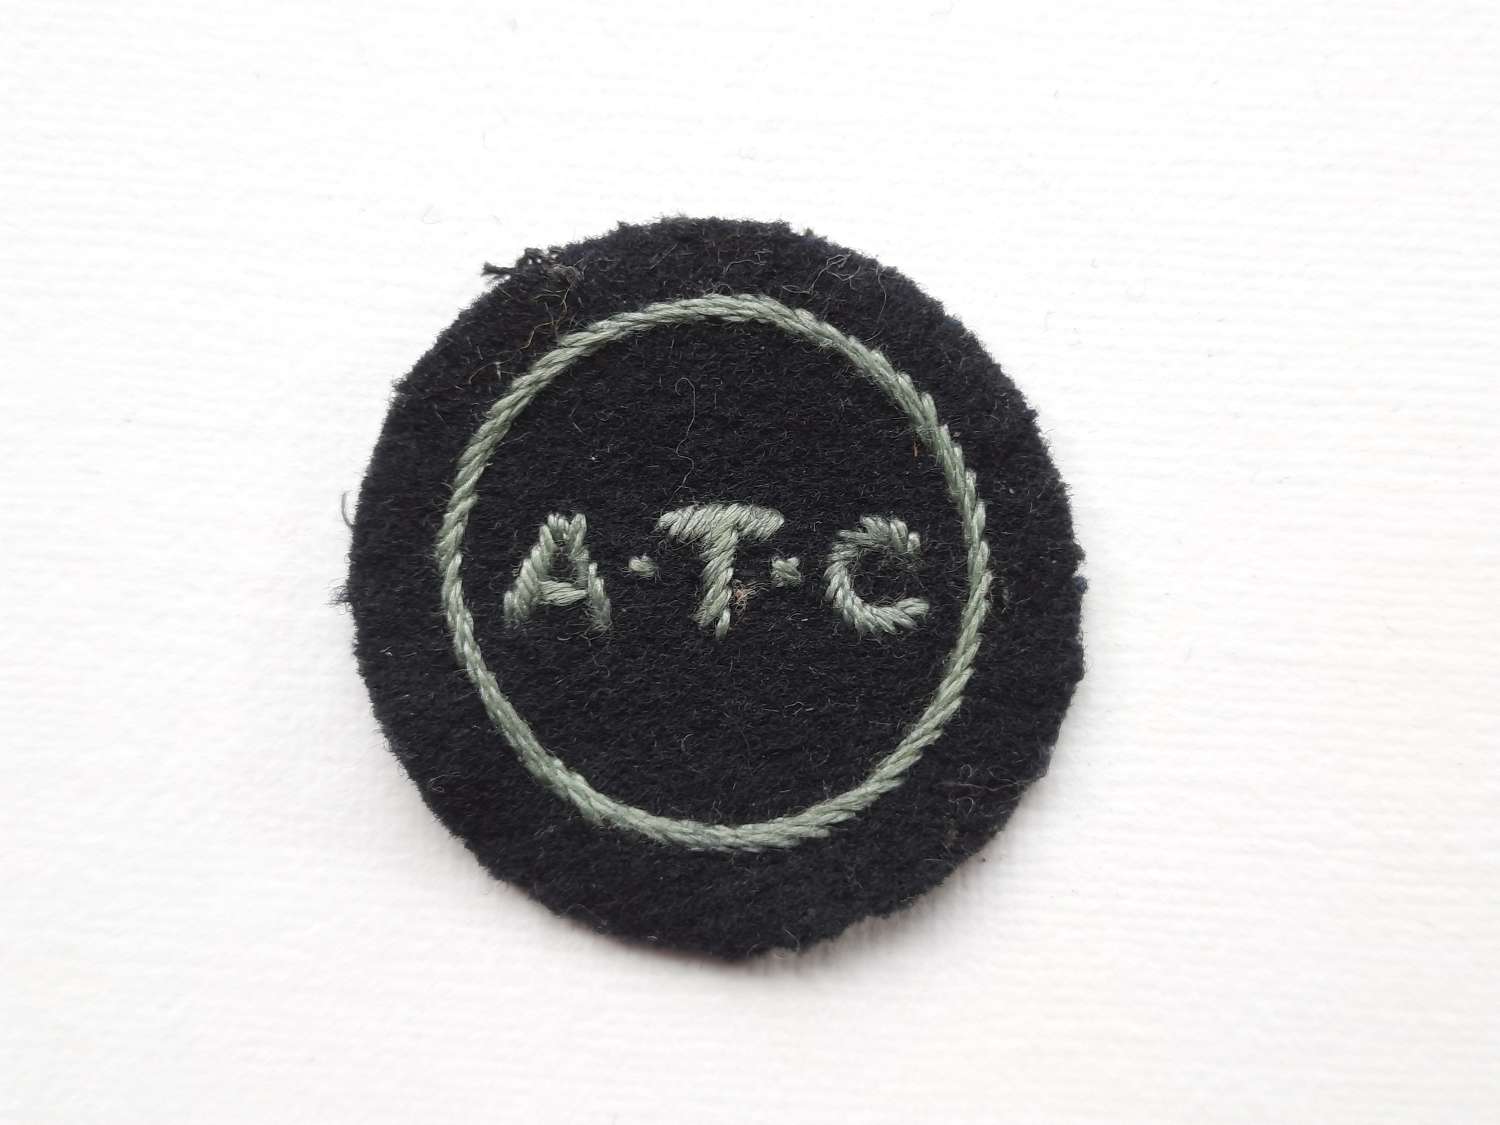 WW2 ATC Patch